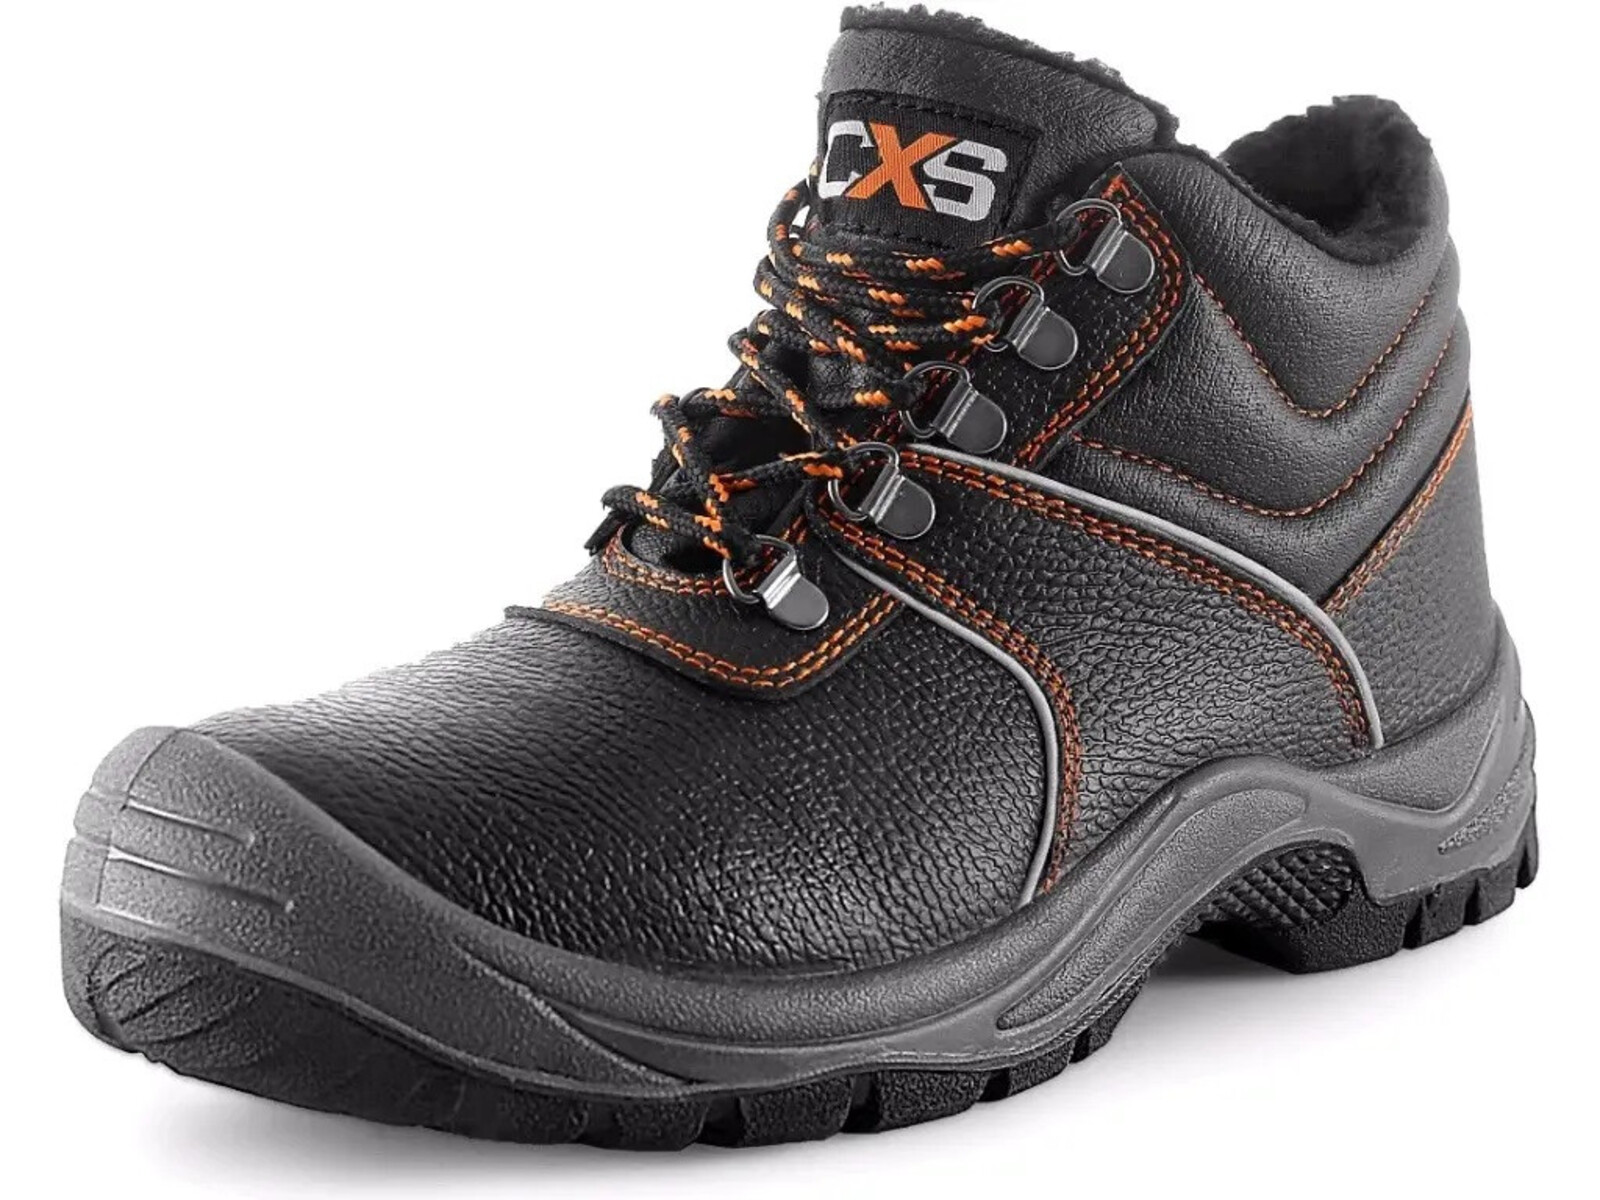 Zimná pracovná členková obuv CXS Stone Apatit Winter O2 FO SRC - veľkosť: 44, farba: čierna/oranžová